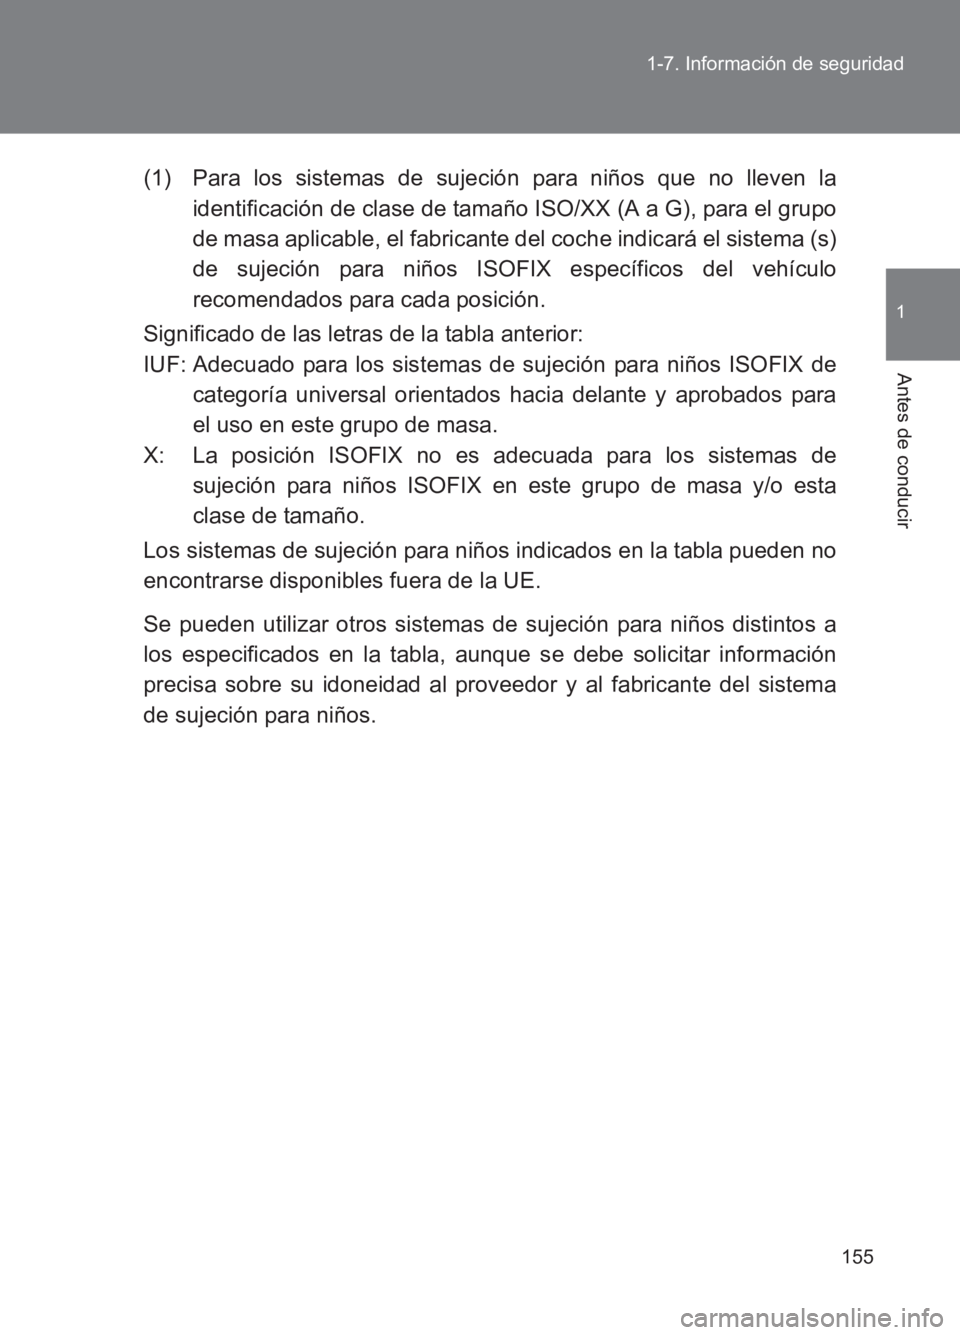 TOYOTA GT86 2017  Manuale de Empleo (in Spanish) 155
1-7. Información de seguridad
1
Antes de conducir
86_ES (OM18075S)
(1) Para los sistemas de sujeción para niños que no lleven la
identificación de clase de tamaño ISO/XX (A a G), para el grup